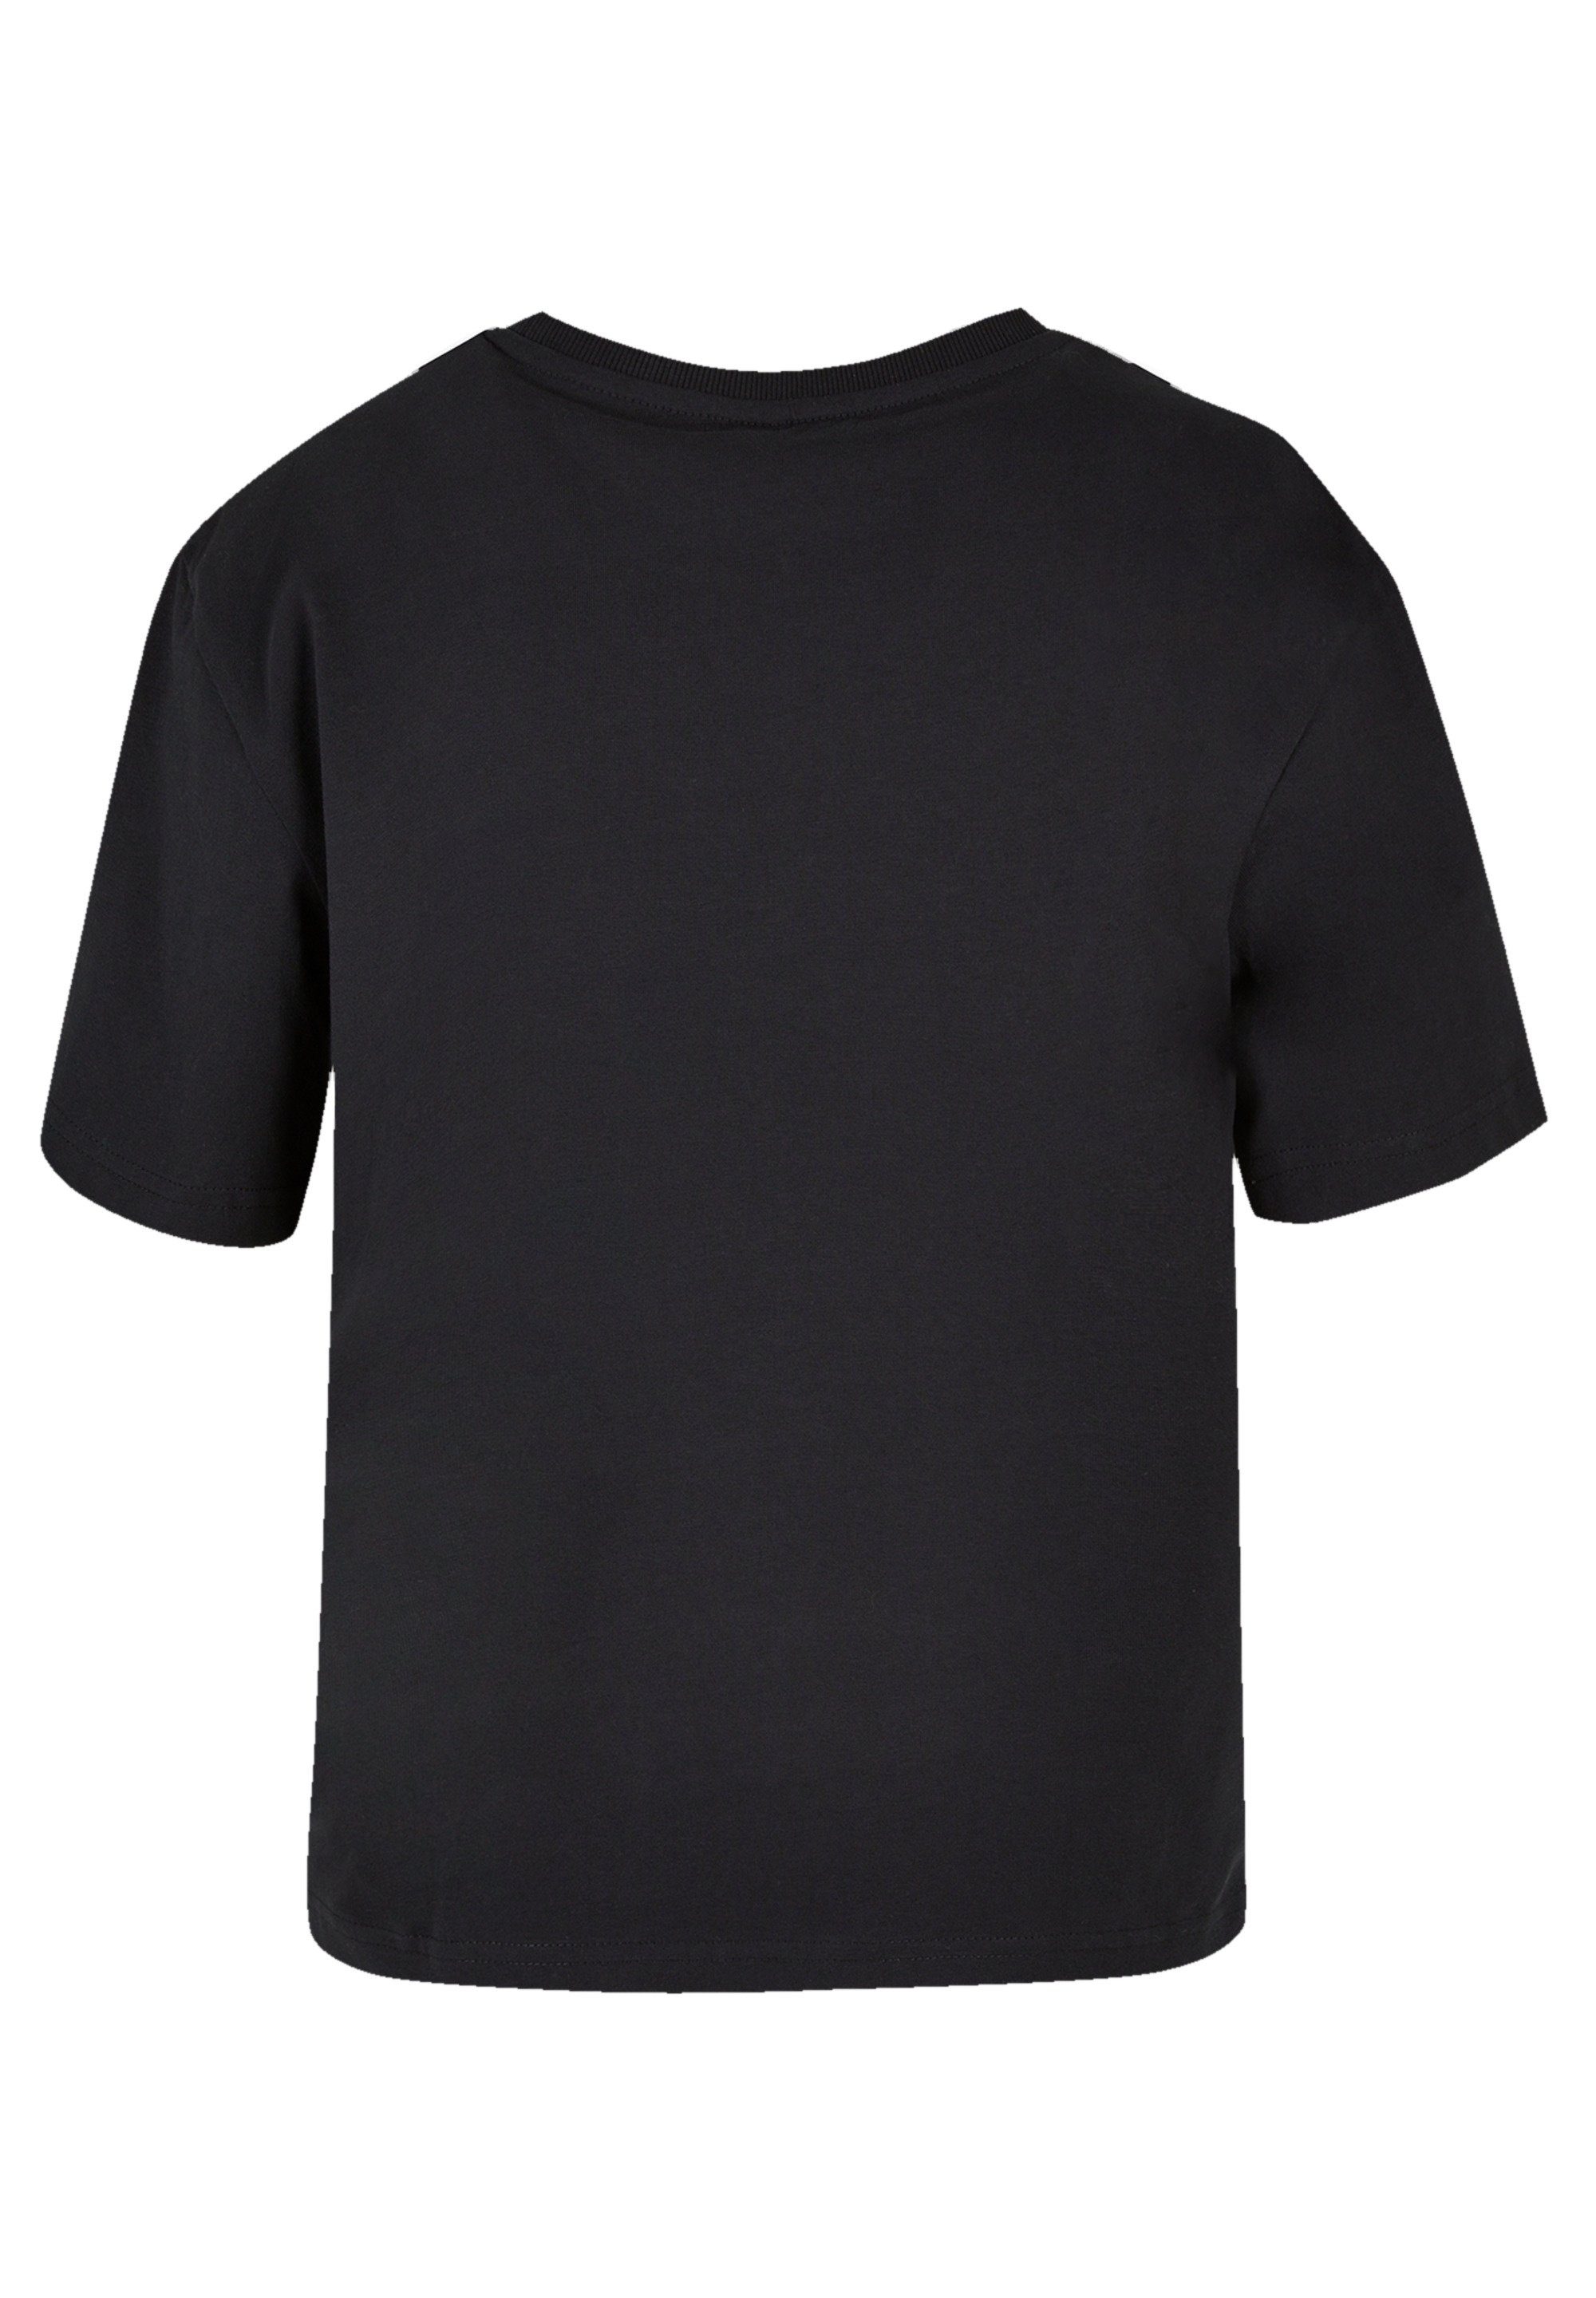 F4NT4STIC T-Shirt Rockstar kombinierbar & Lilo Disney Stitch Qualität, Premium vielseitig Komfortabel und